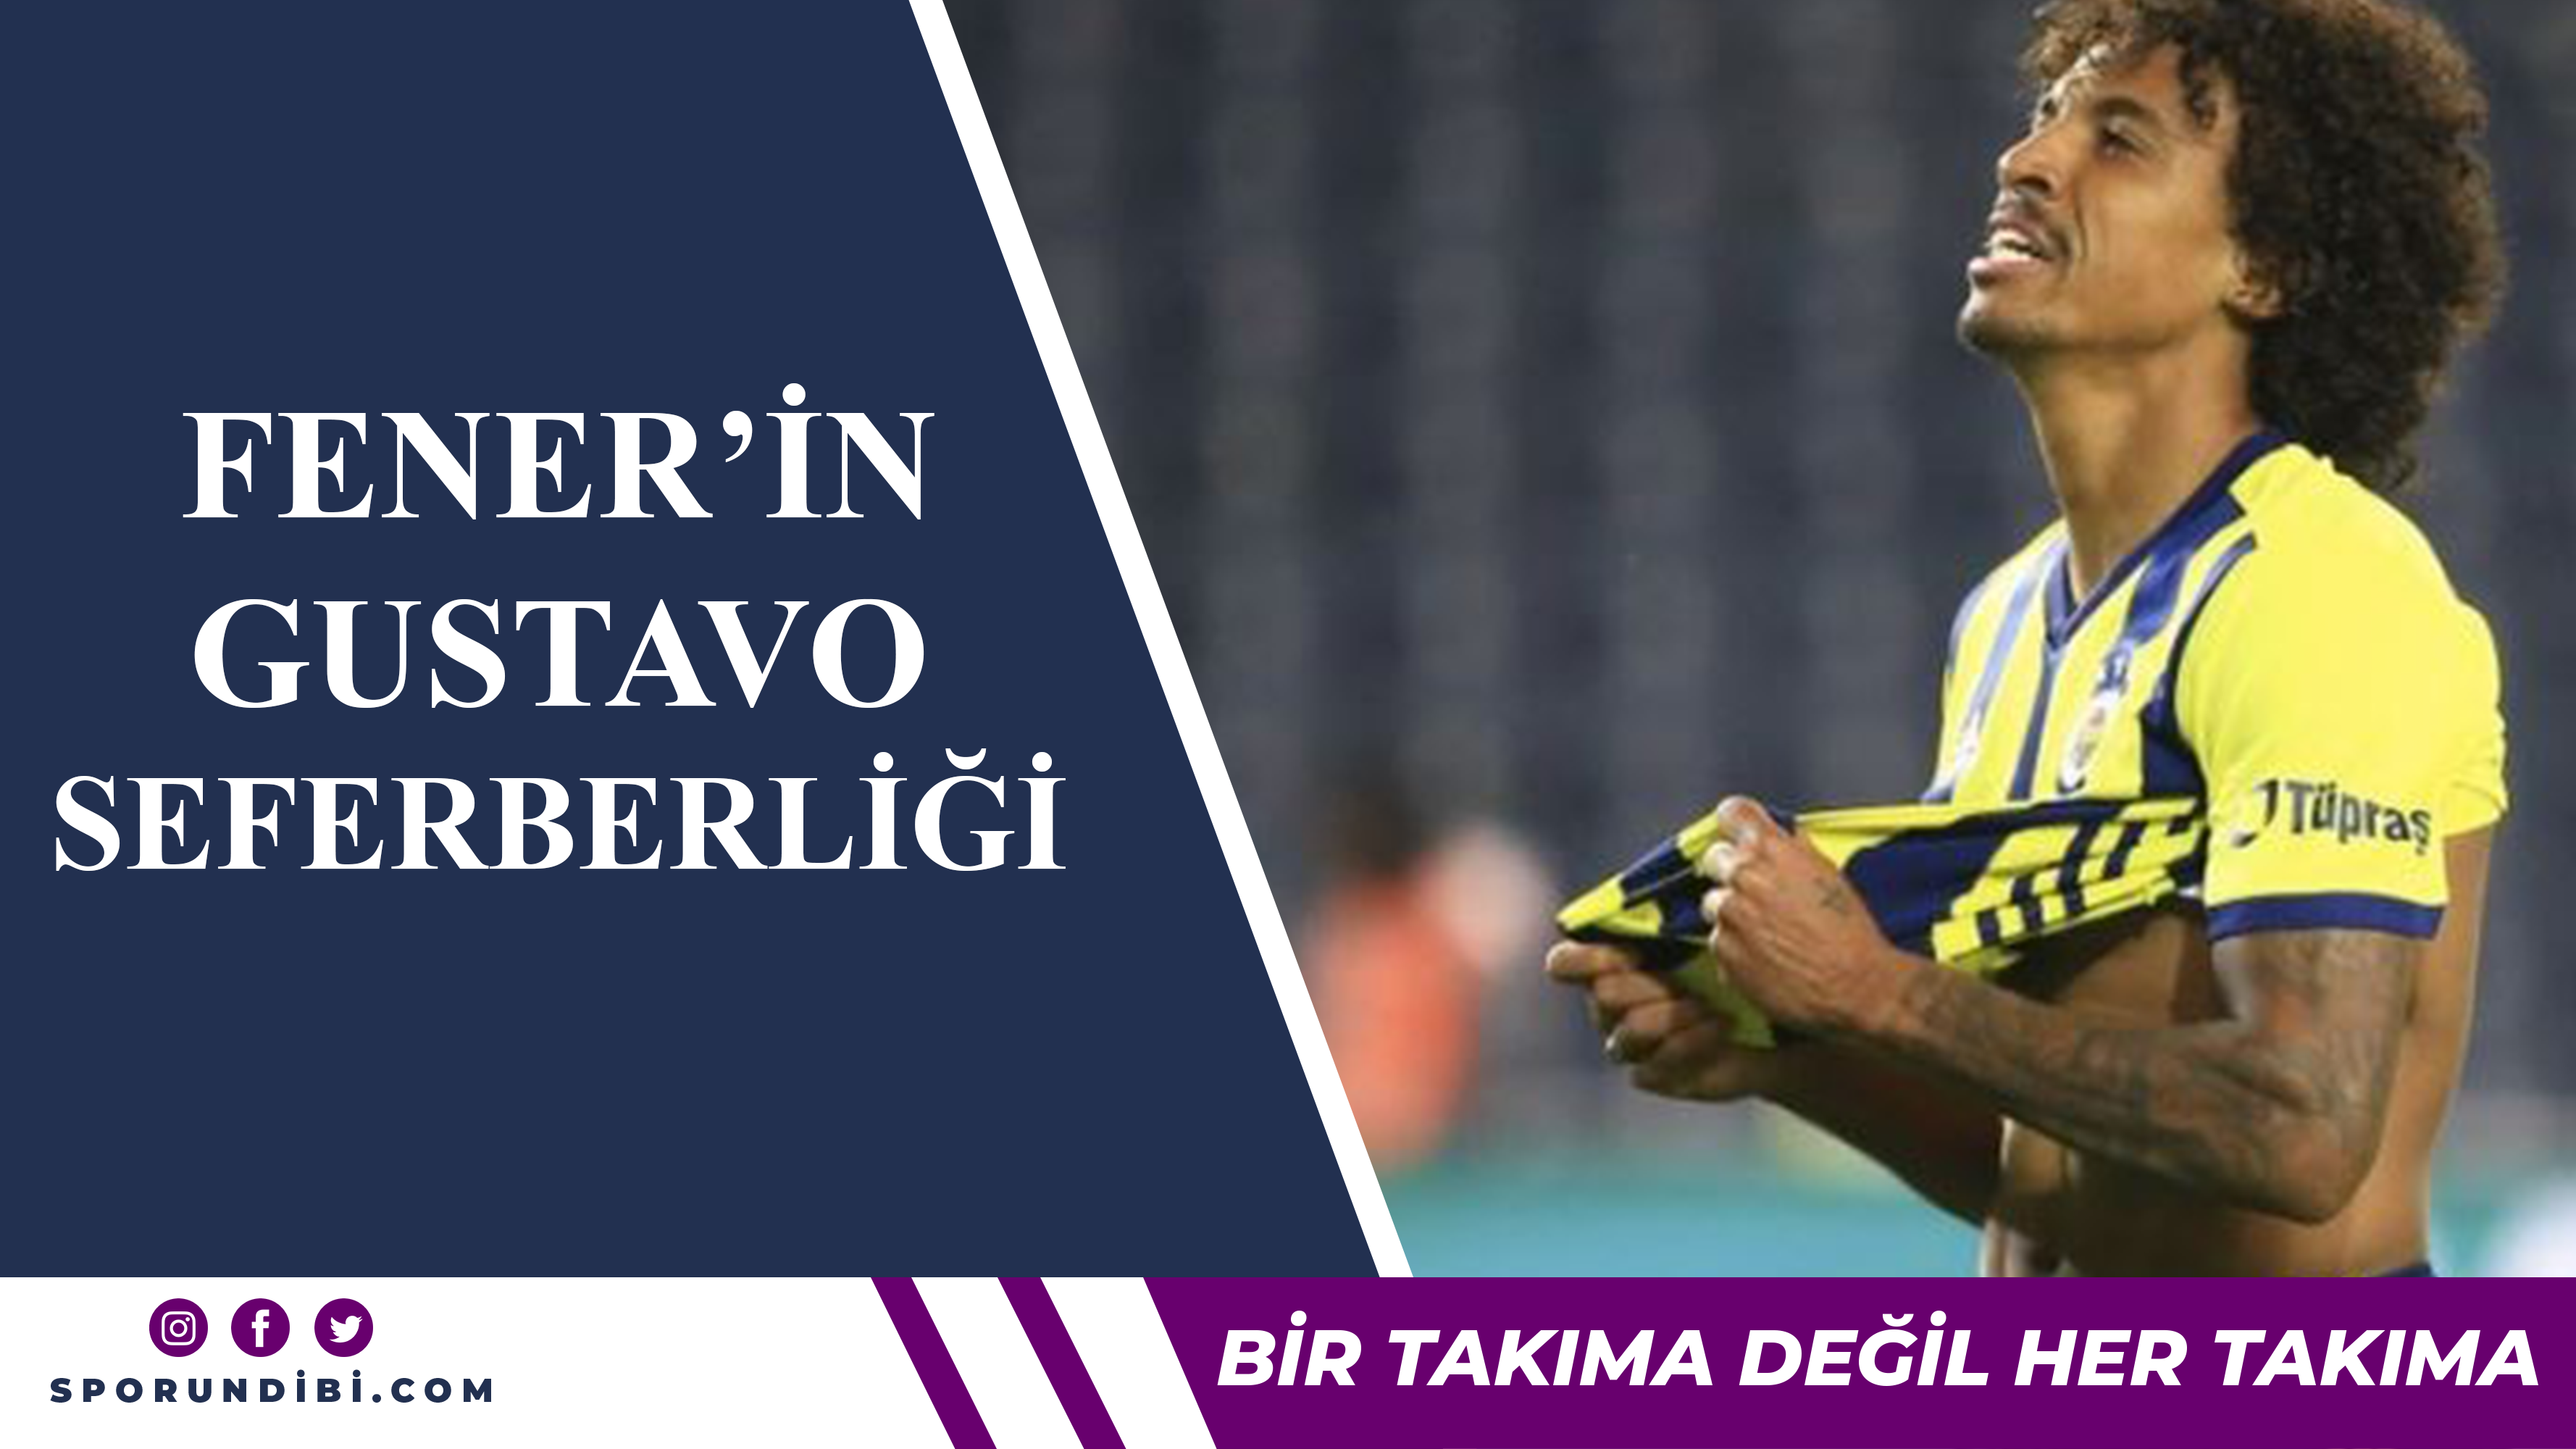 Fenerbahçe'de Gustavo seferberliği